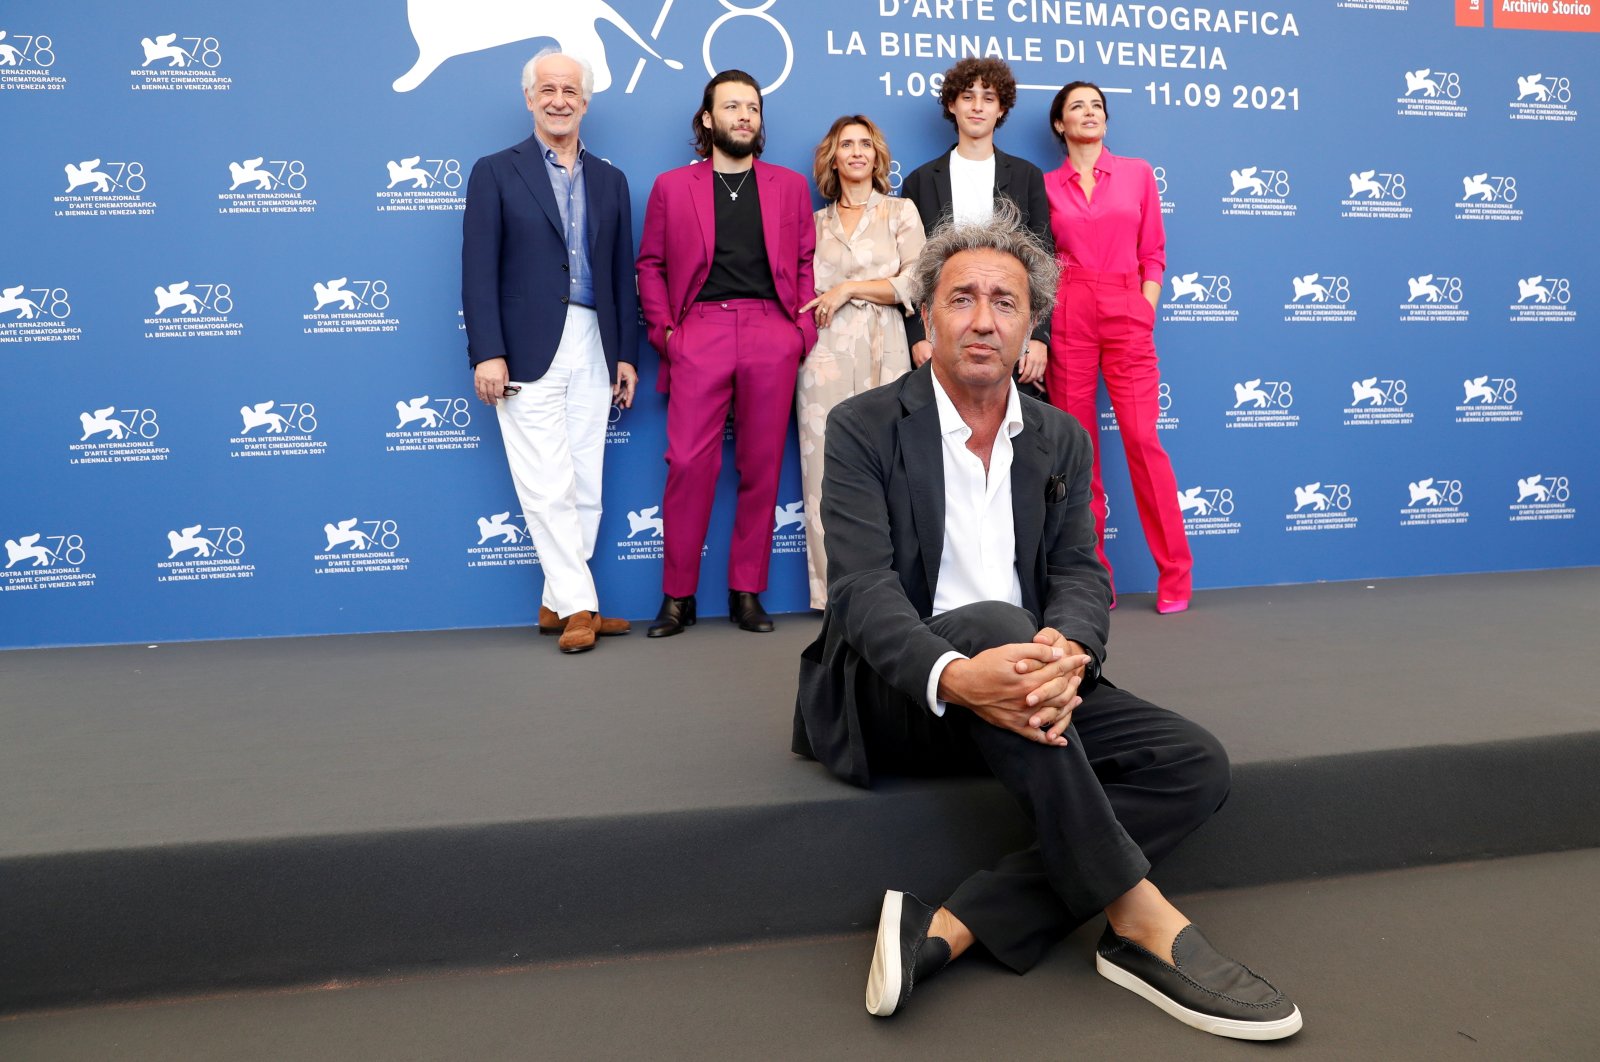 Director Paolo Sorrentino and actors Toni Servillo, Marlon Joubert, Teresa Saponangelo, Filippo Scotti and Luisa Ranieri pose at the 78th Venice Film Festival, Venice, Italy, Sept. 2, 2021. (REUTERS)